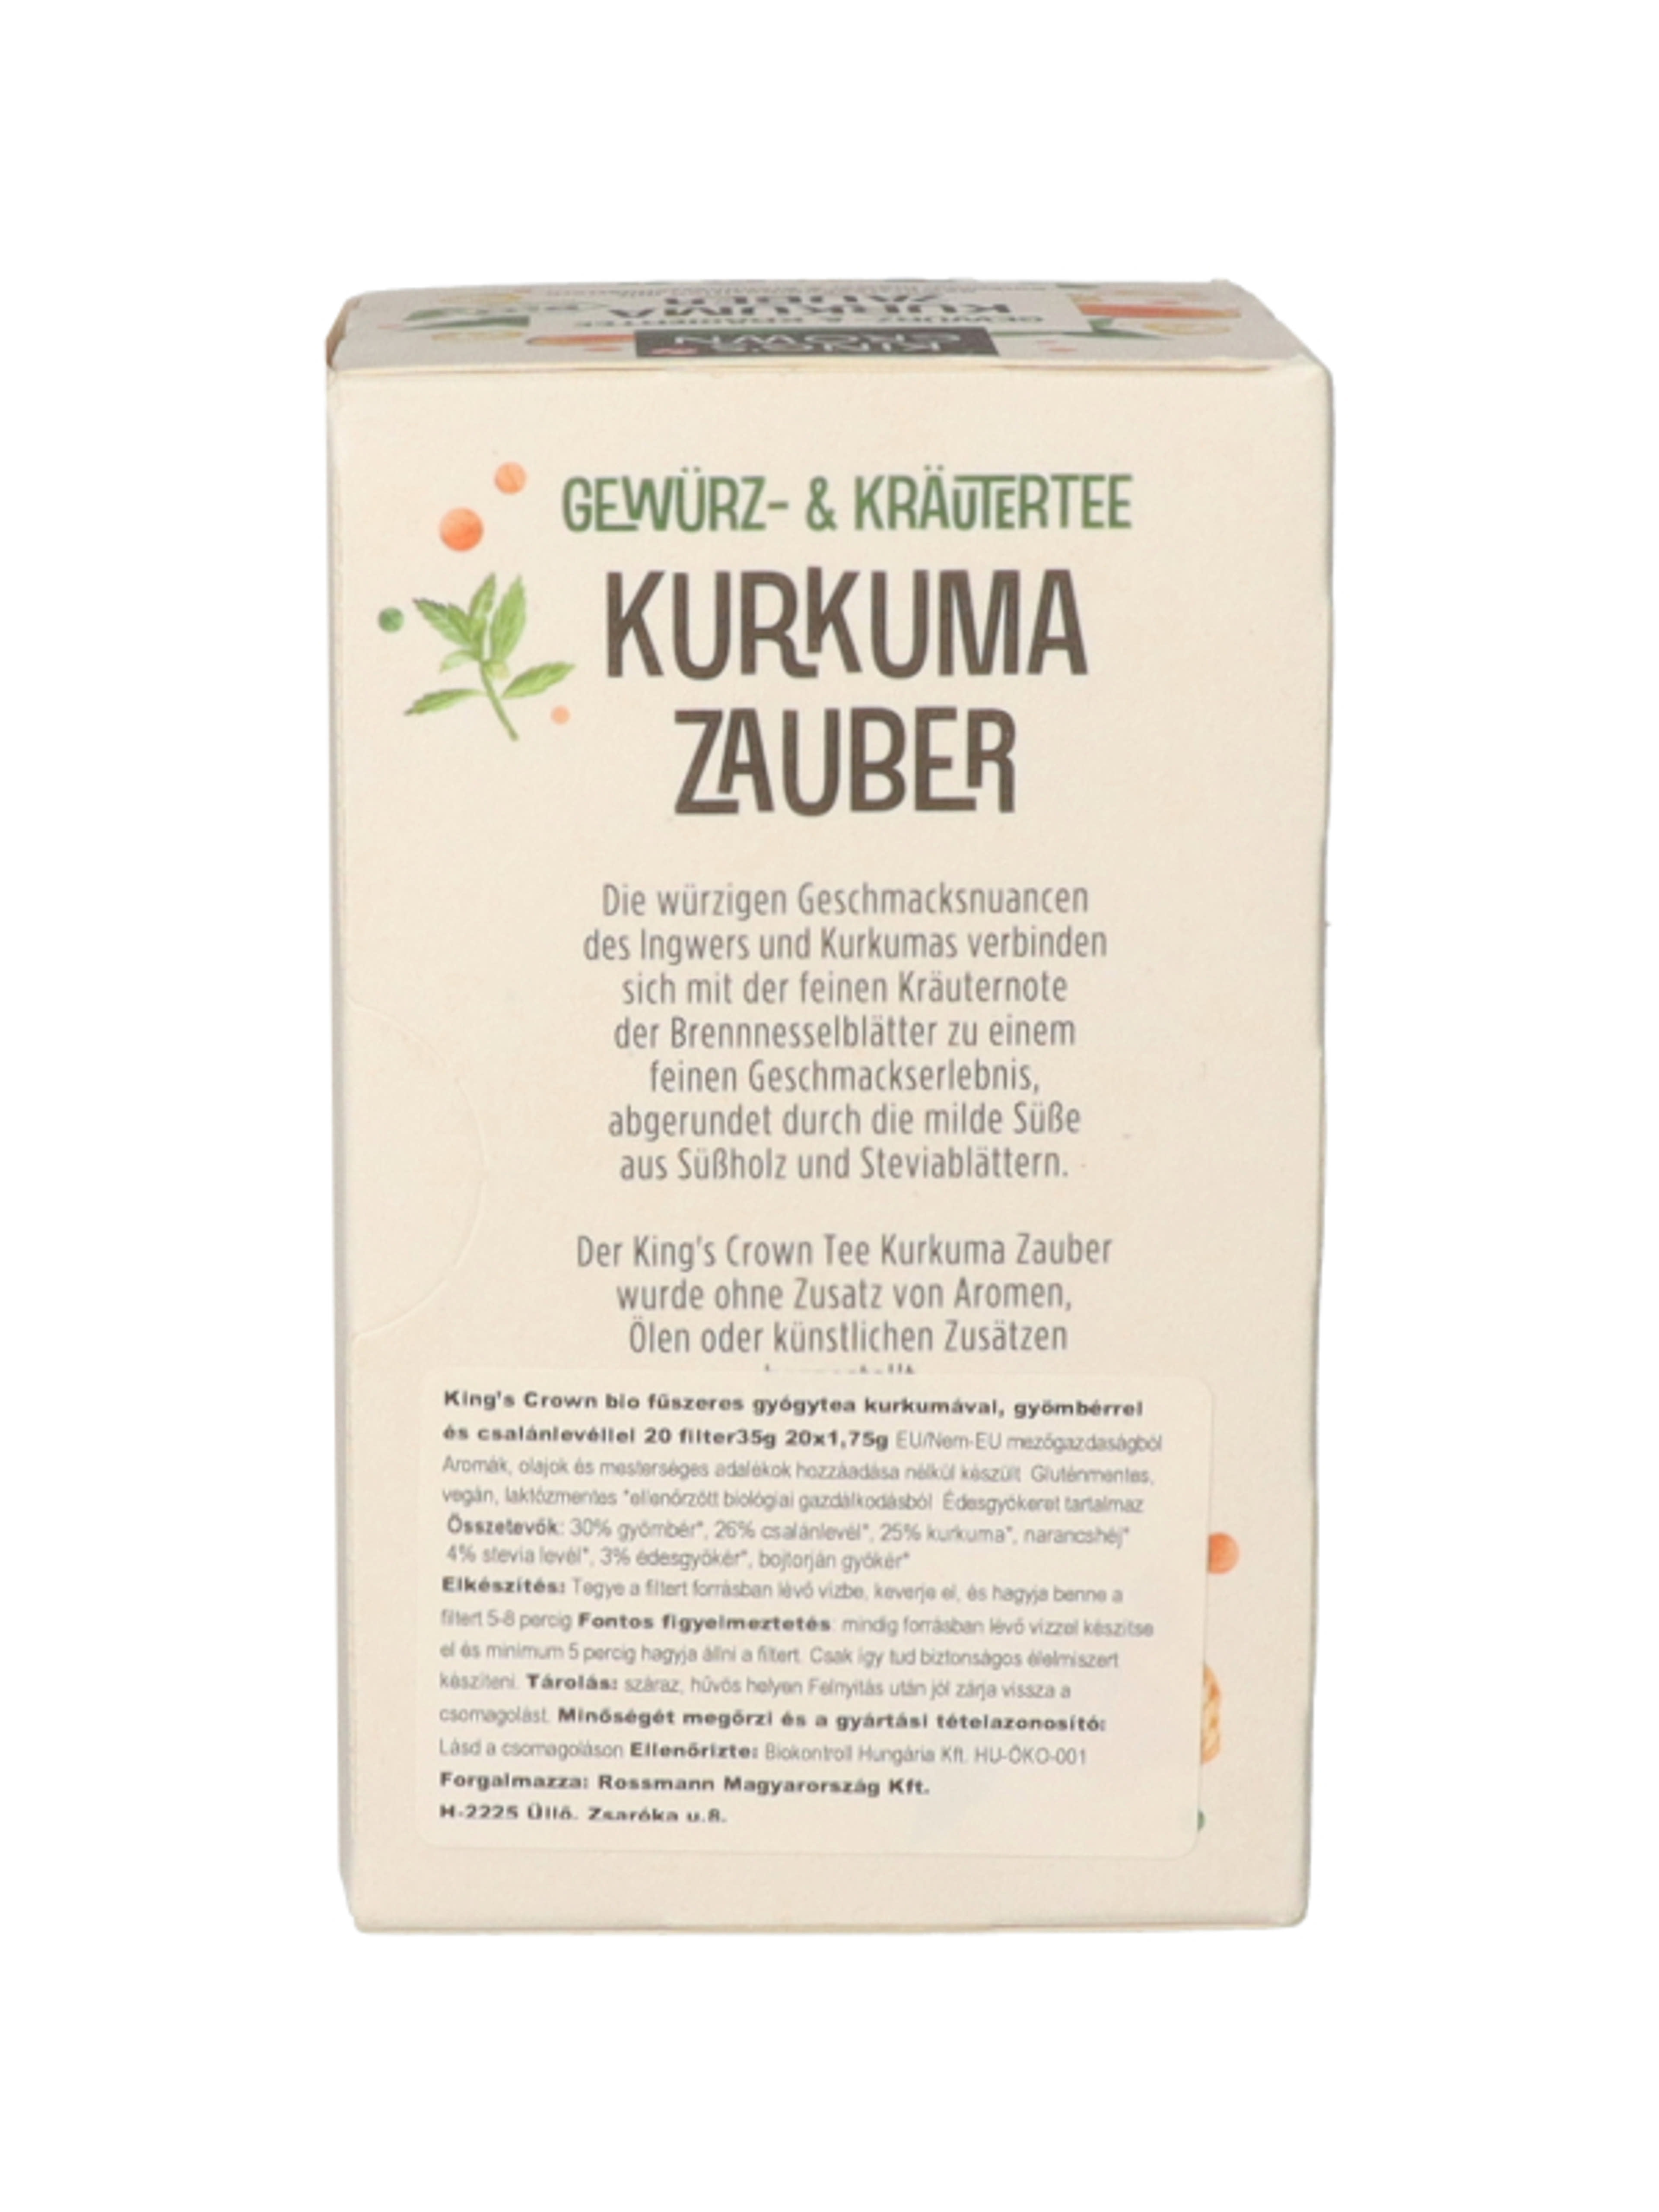 King's Vrown Bio fűszeres gyógytea kurkumával 20 filter - 35 g-5